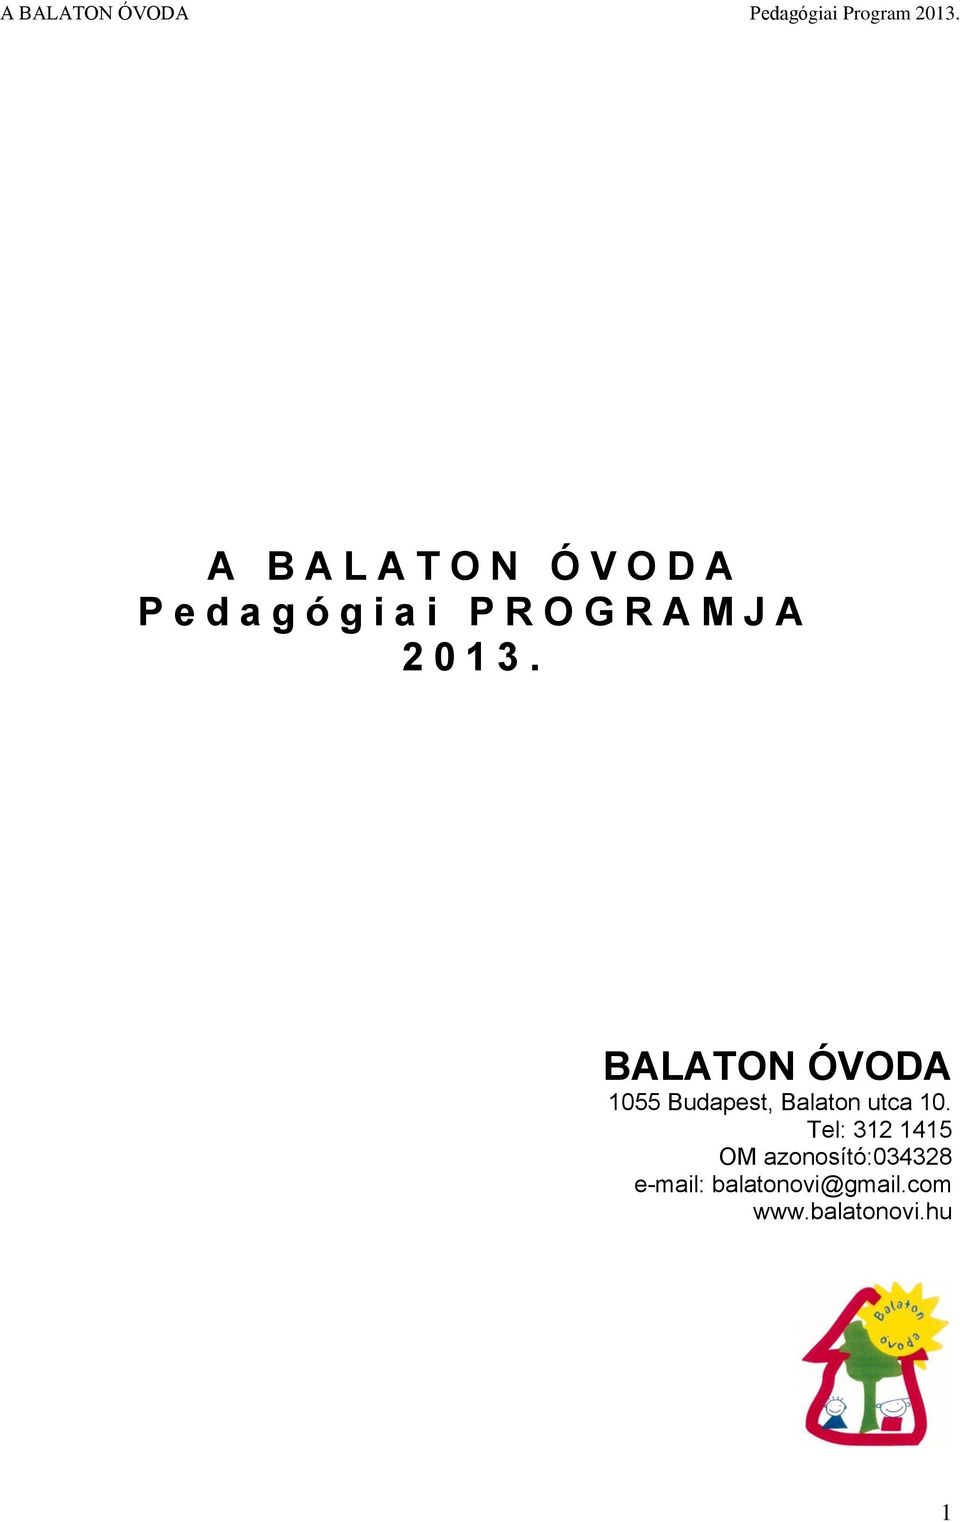 BALATON ÓVODA 1055 Budapest, Balaton utca 10.